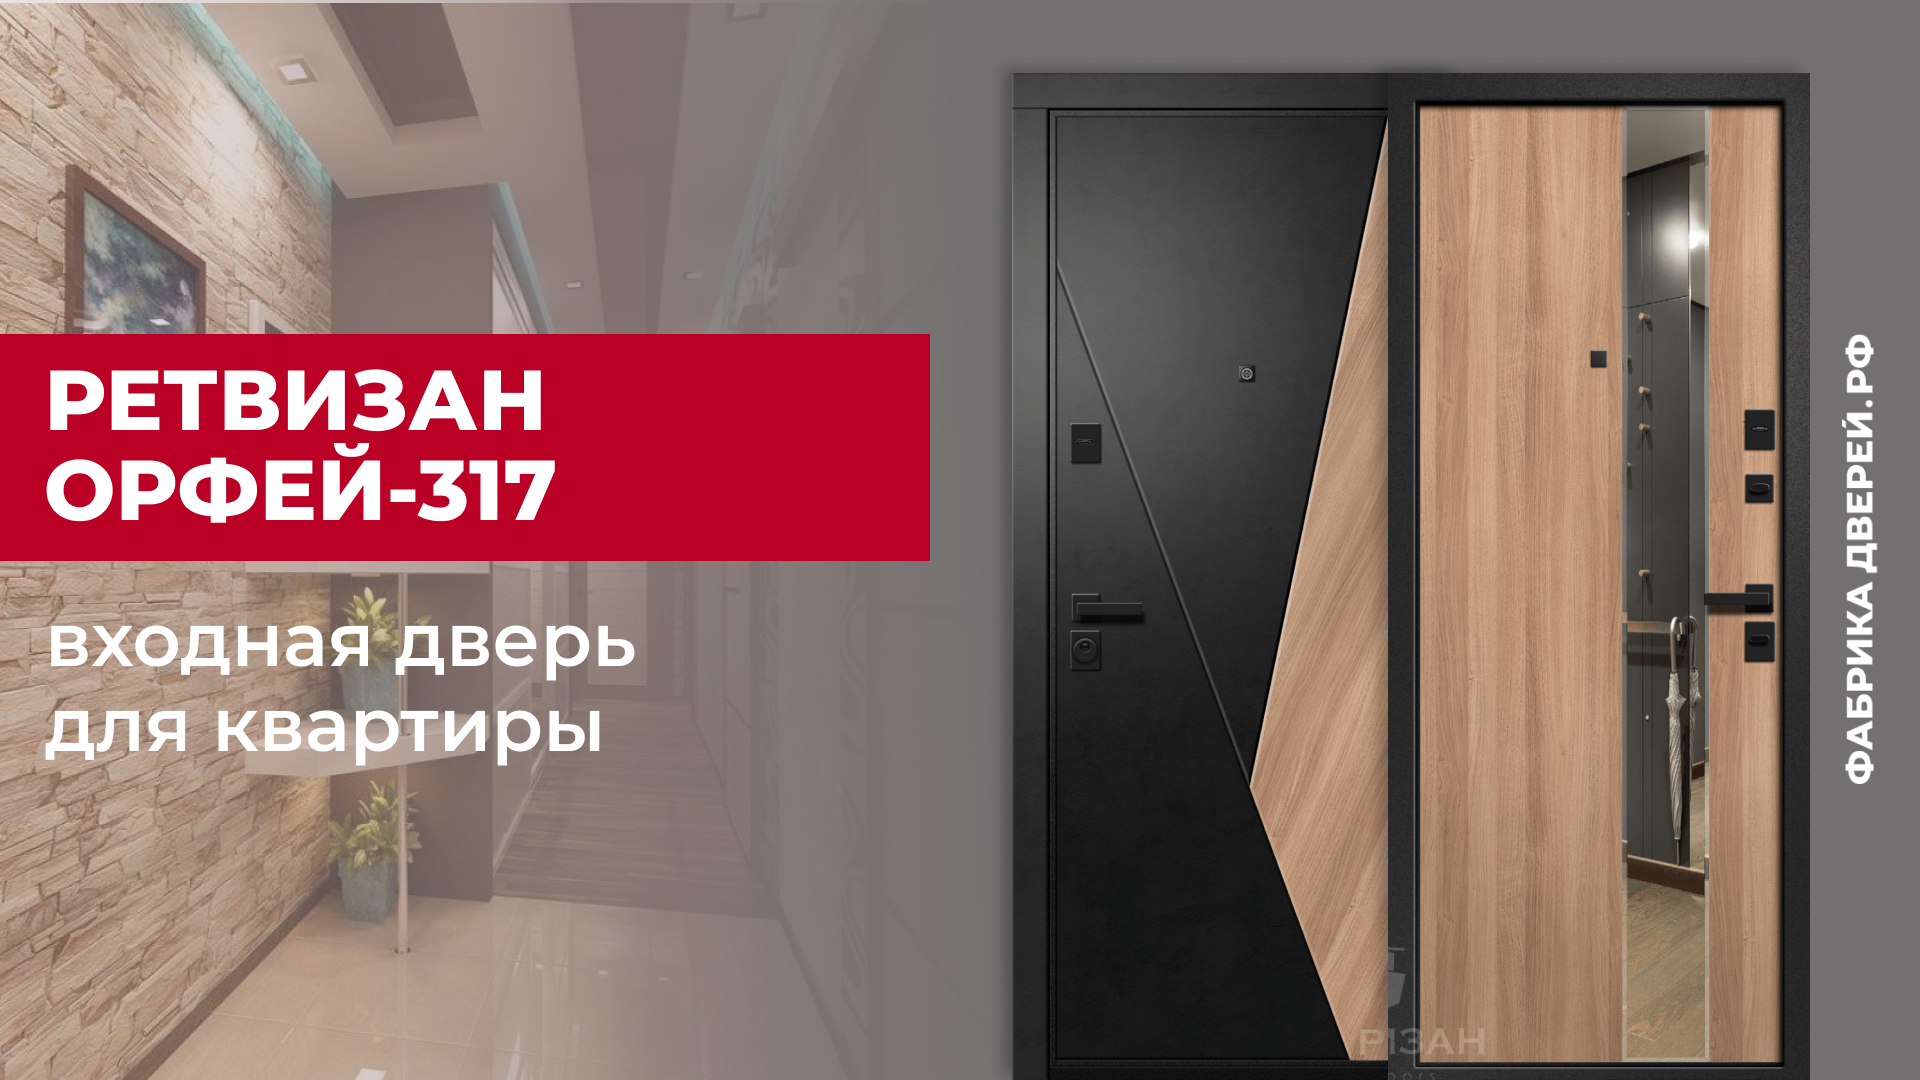 Входная дверь для квартиры Орфей-317 с зеркалом завода Ретвизан с зеркалом #двери #diy #дом